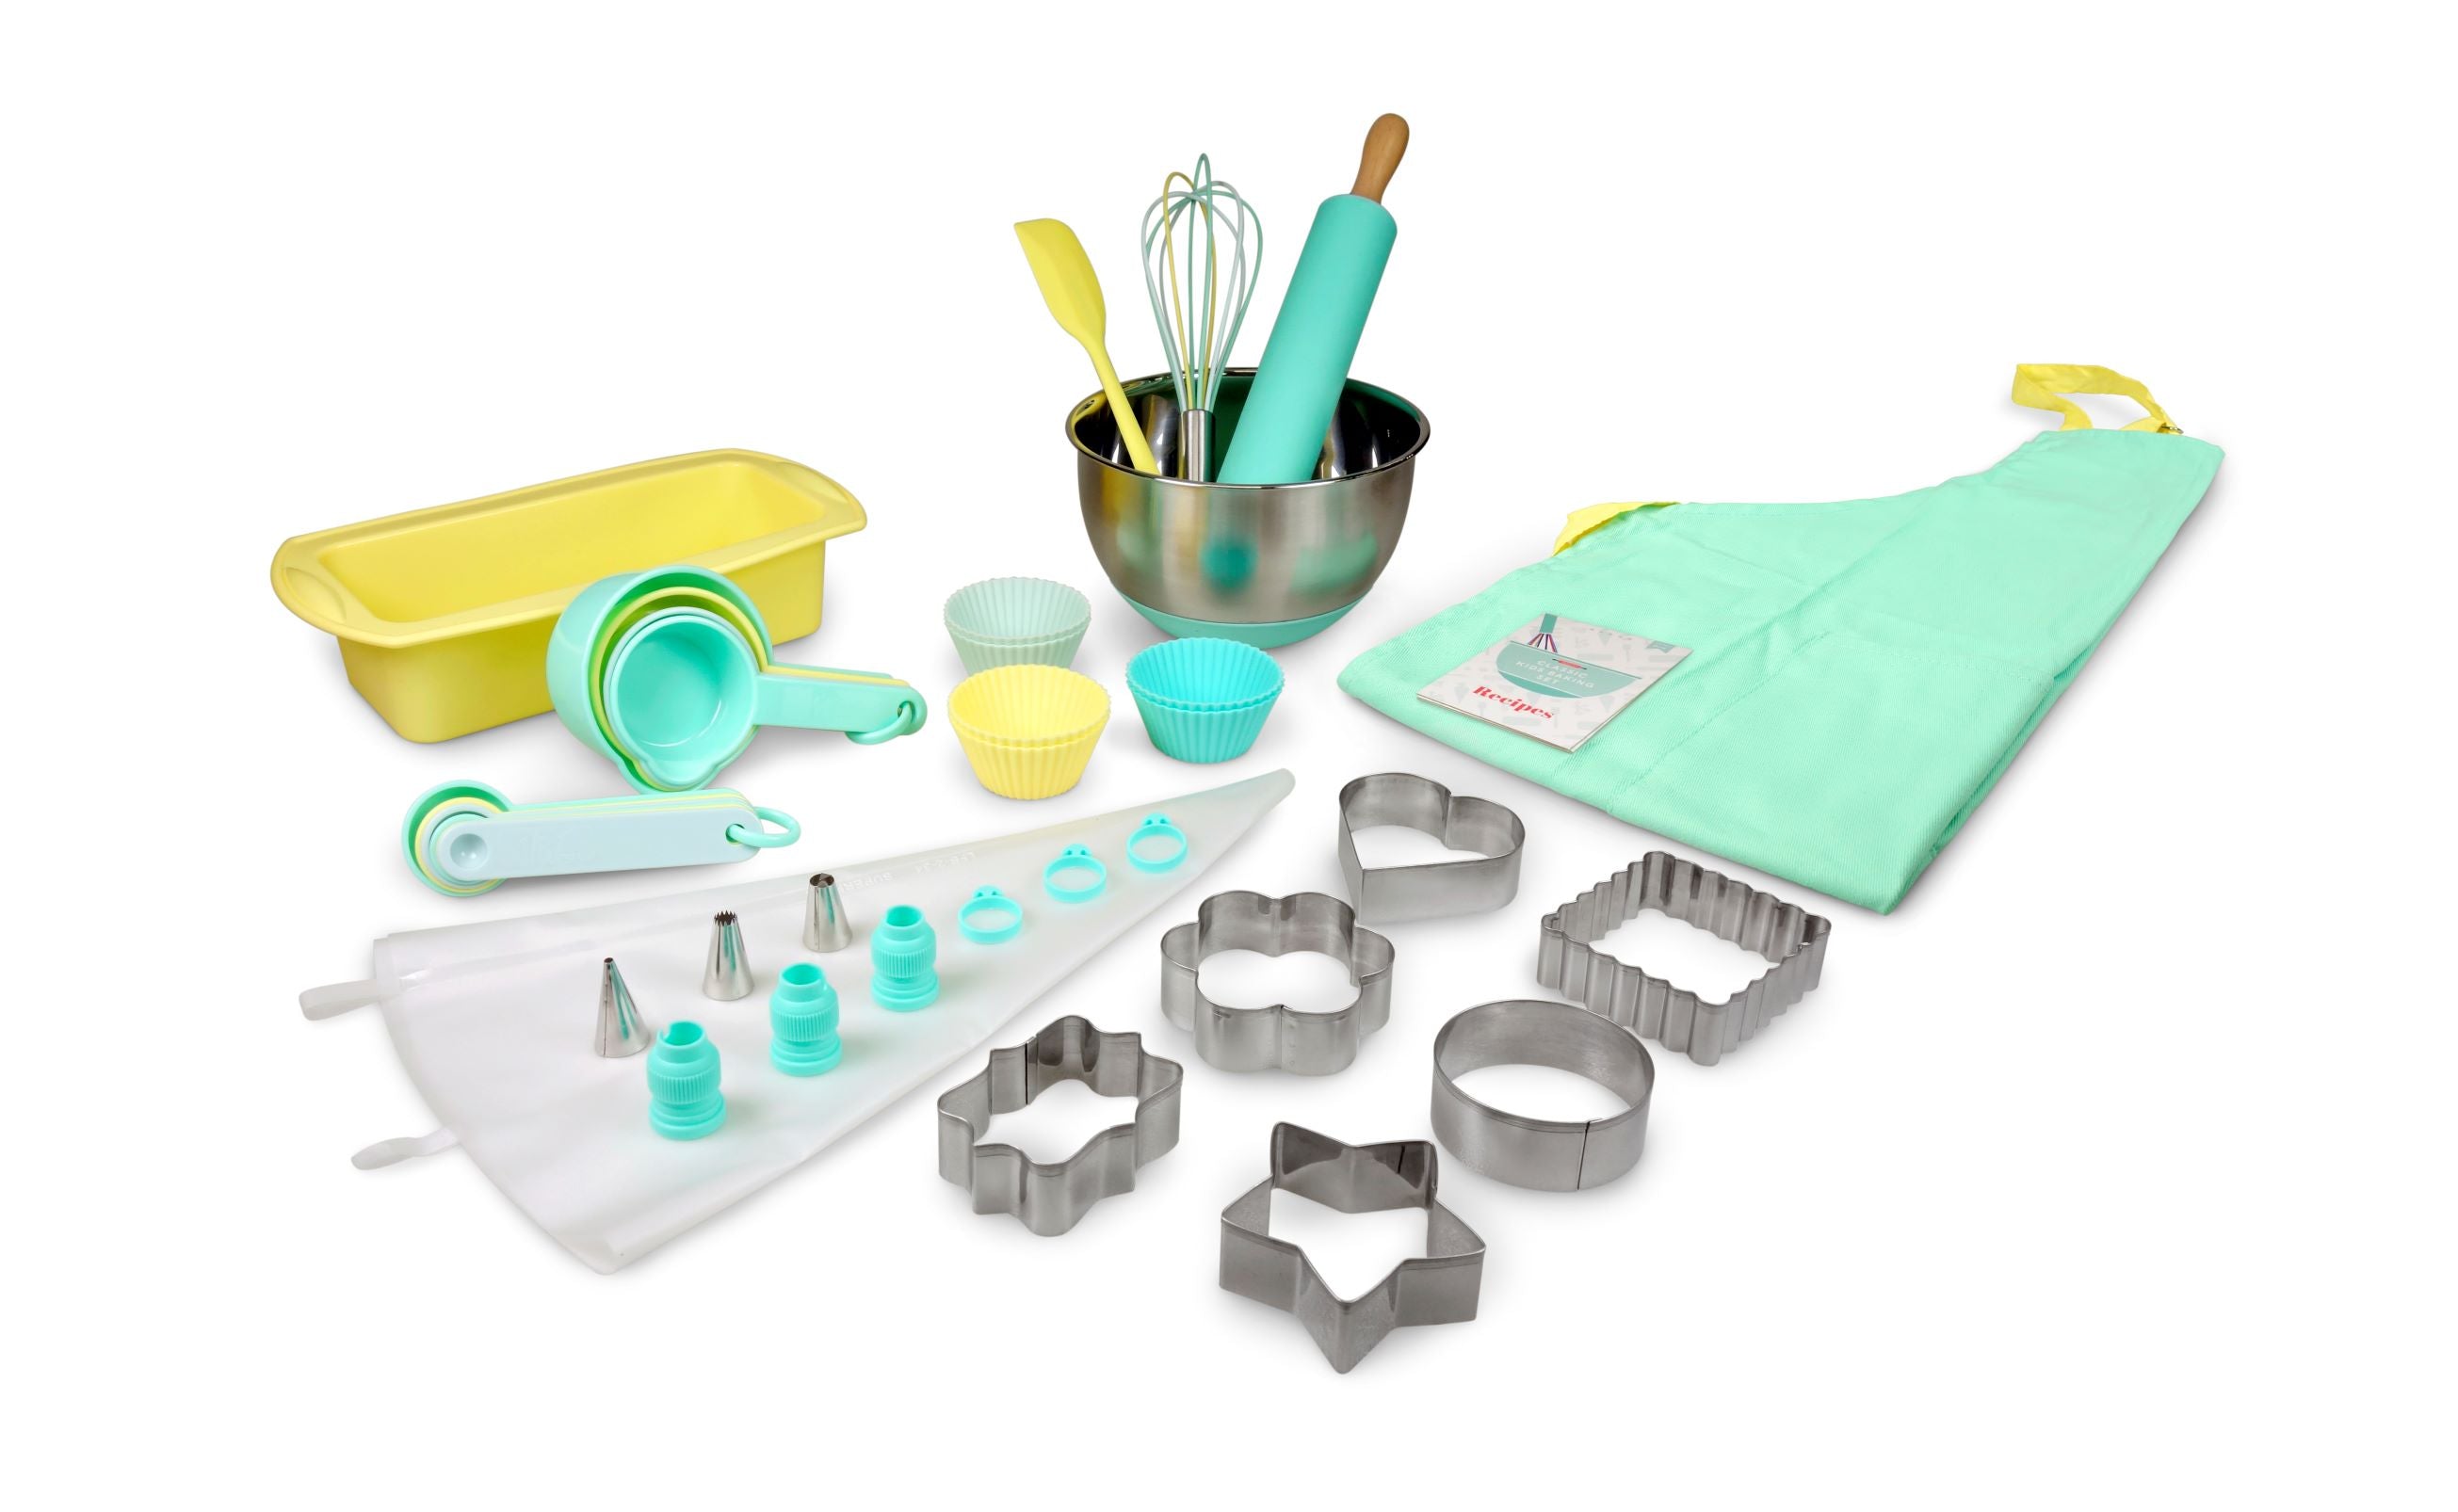 DIY Baking Activity Kit - Baking Set & Baking Utensils, with